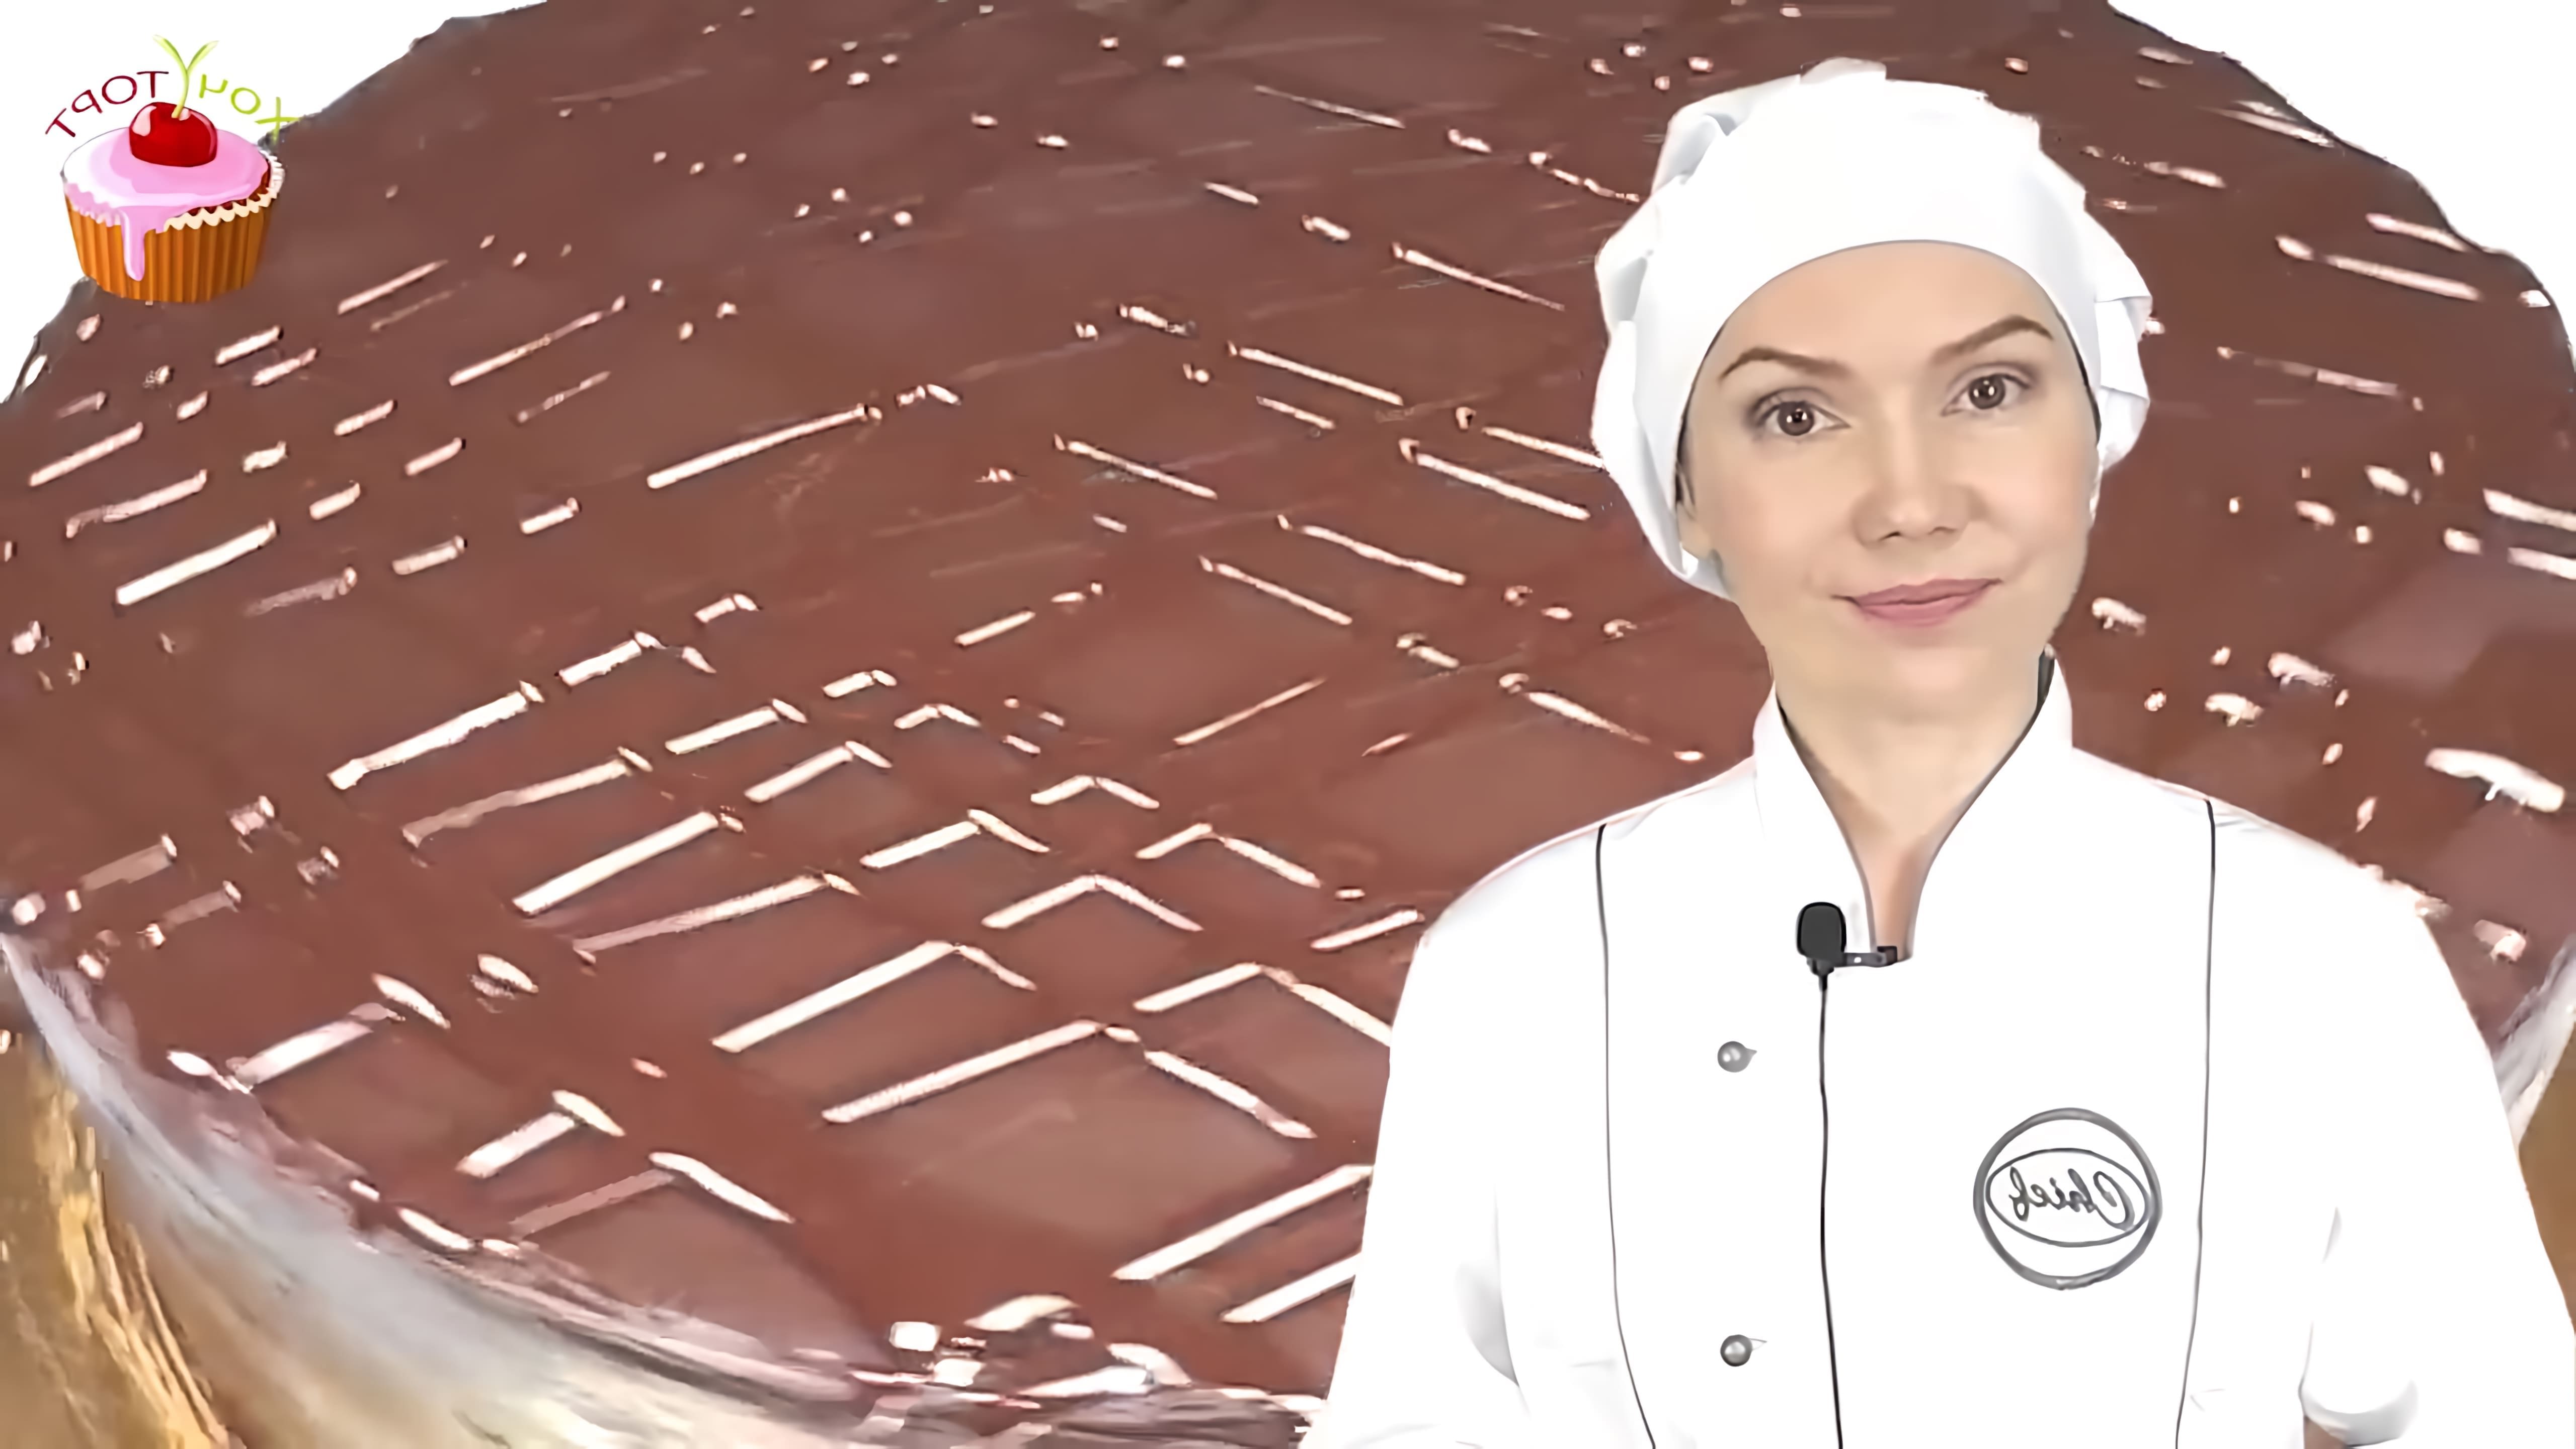 В этом видео демонстрируется рецепт приготовления торта Прага